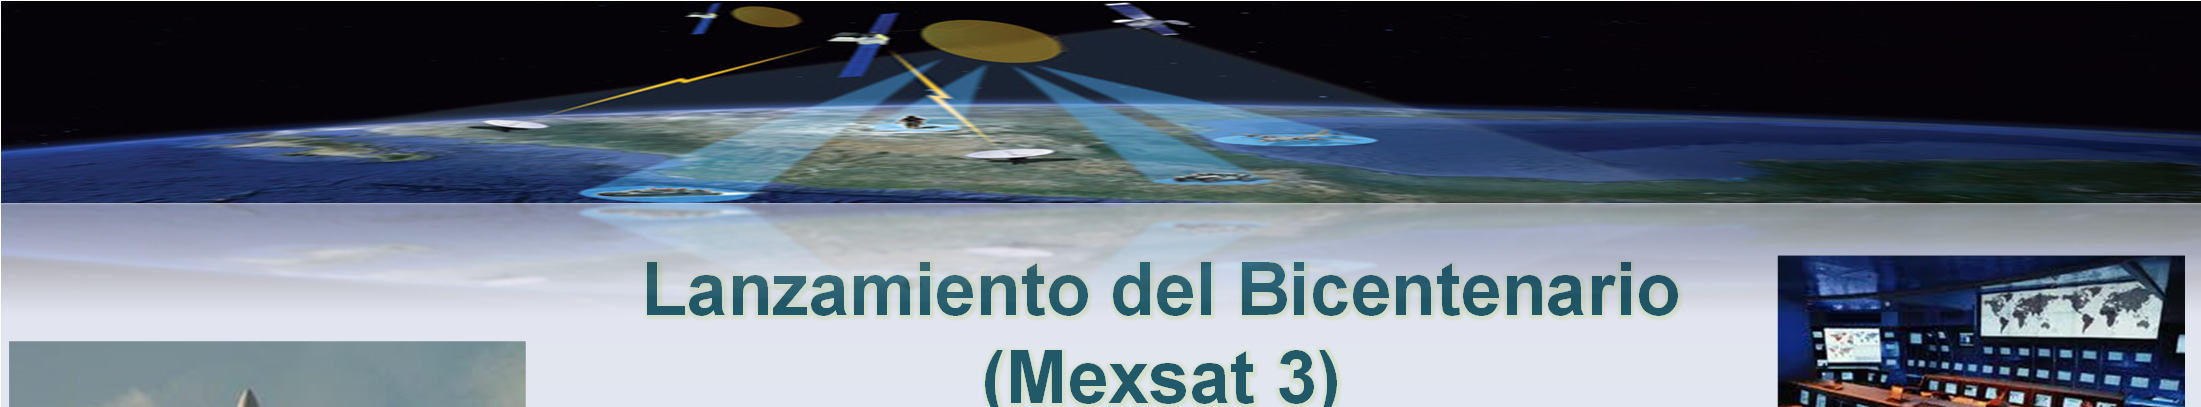 Lanzamiento del Bicentenario (Mexsat 3)